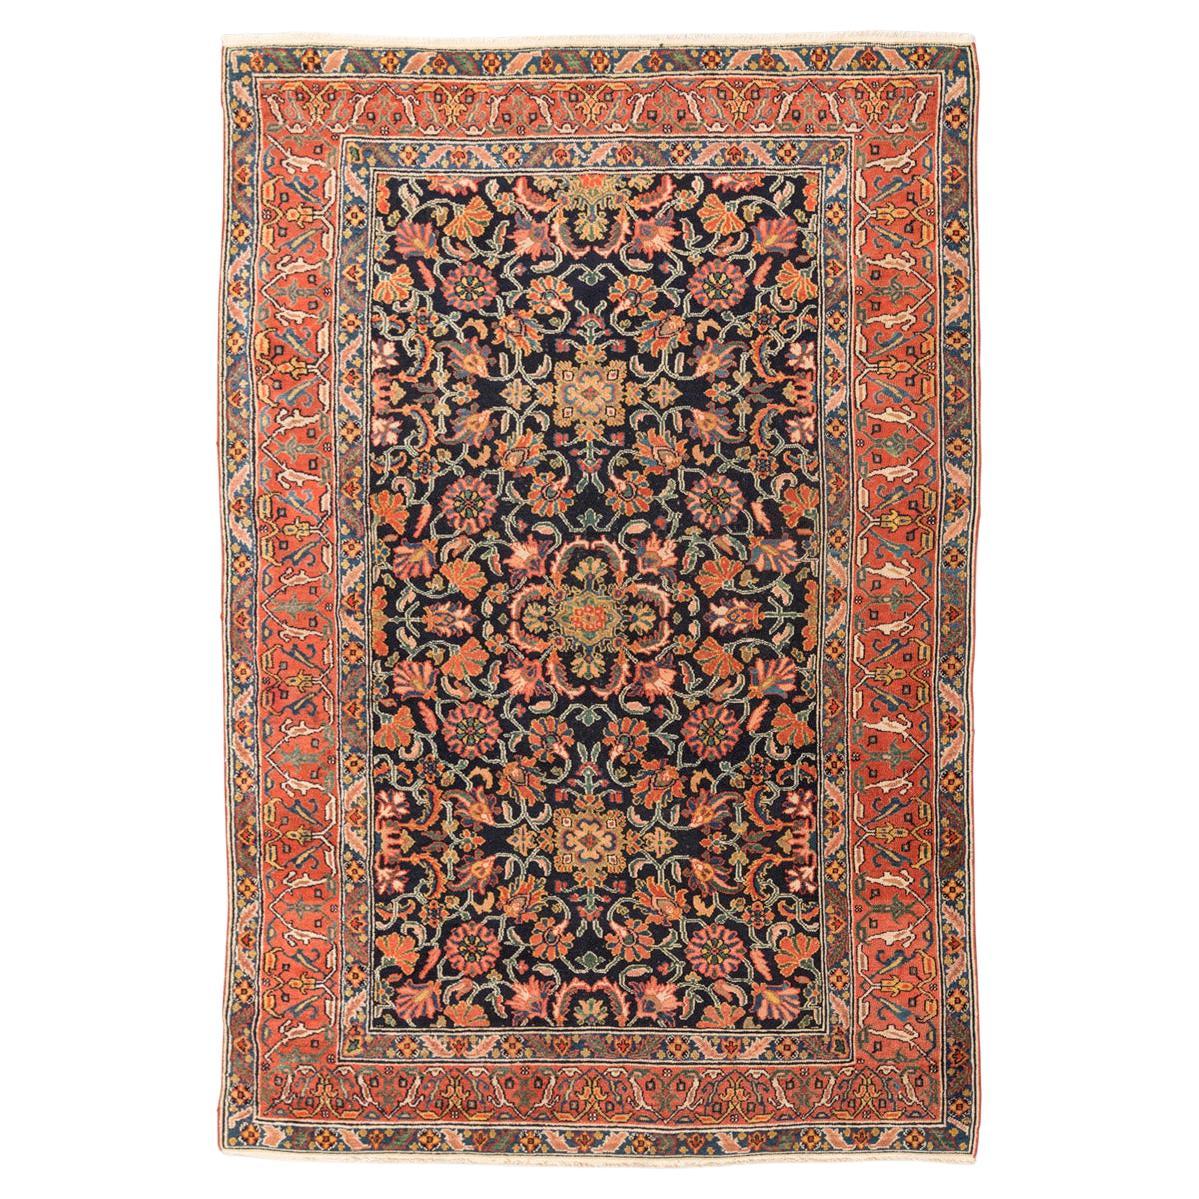 Handgefertigter Melayir-Teppich aus Wolle im Garrus-Design. 2,00 x 1,35 m.